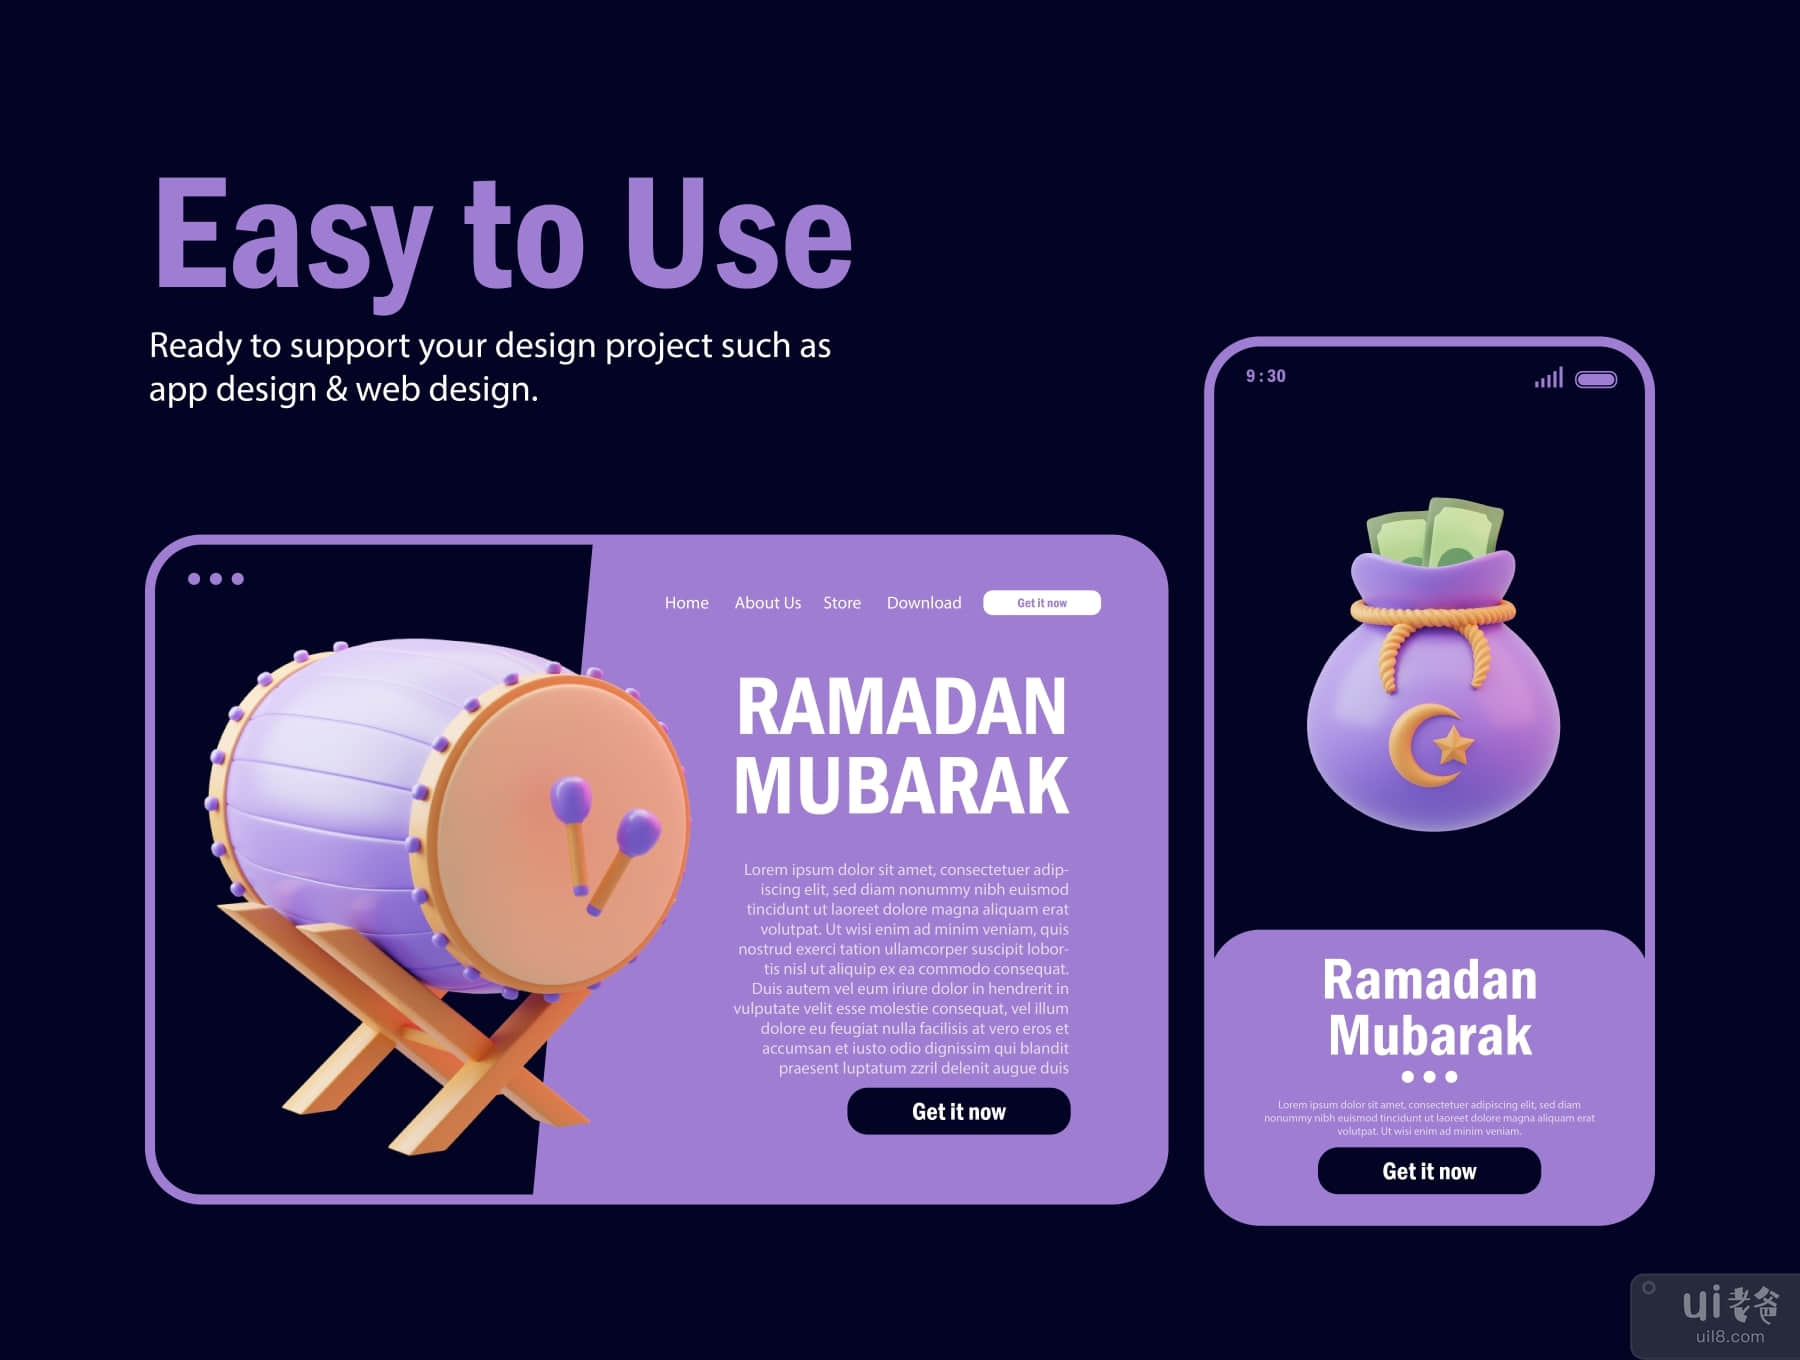 斋月穆巴拉克 3D 资产 (Ramadan Mubarak 3D Asset)插图2